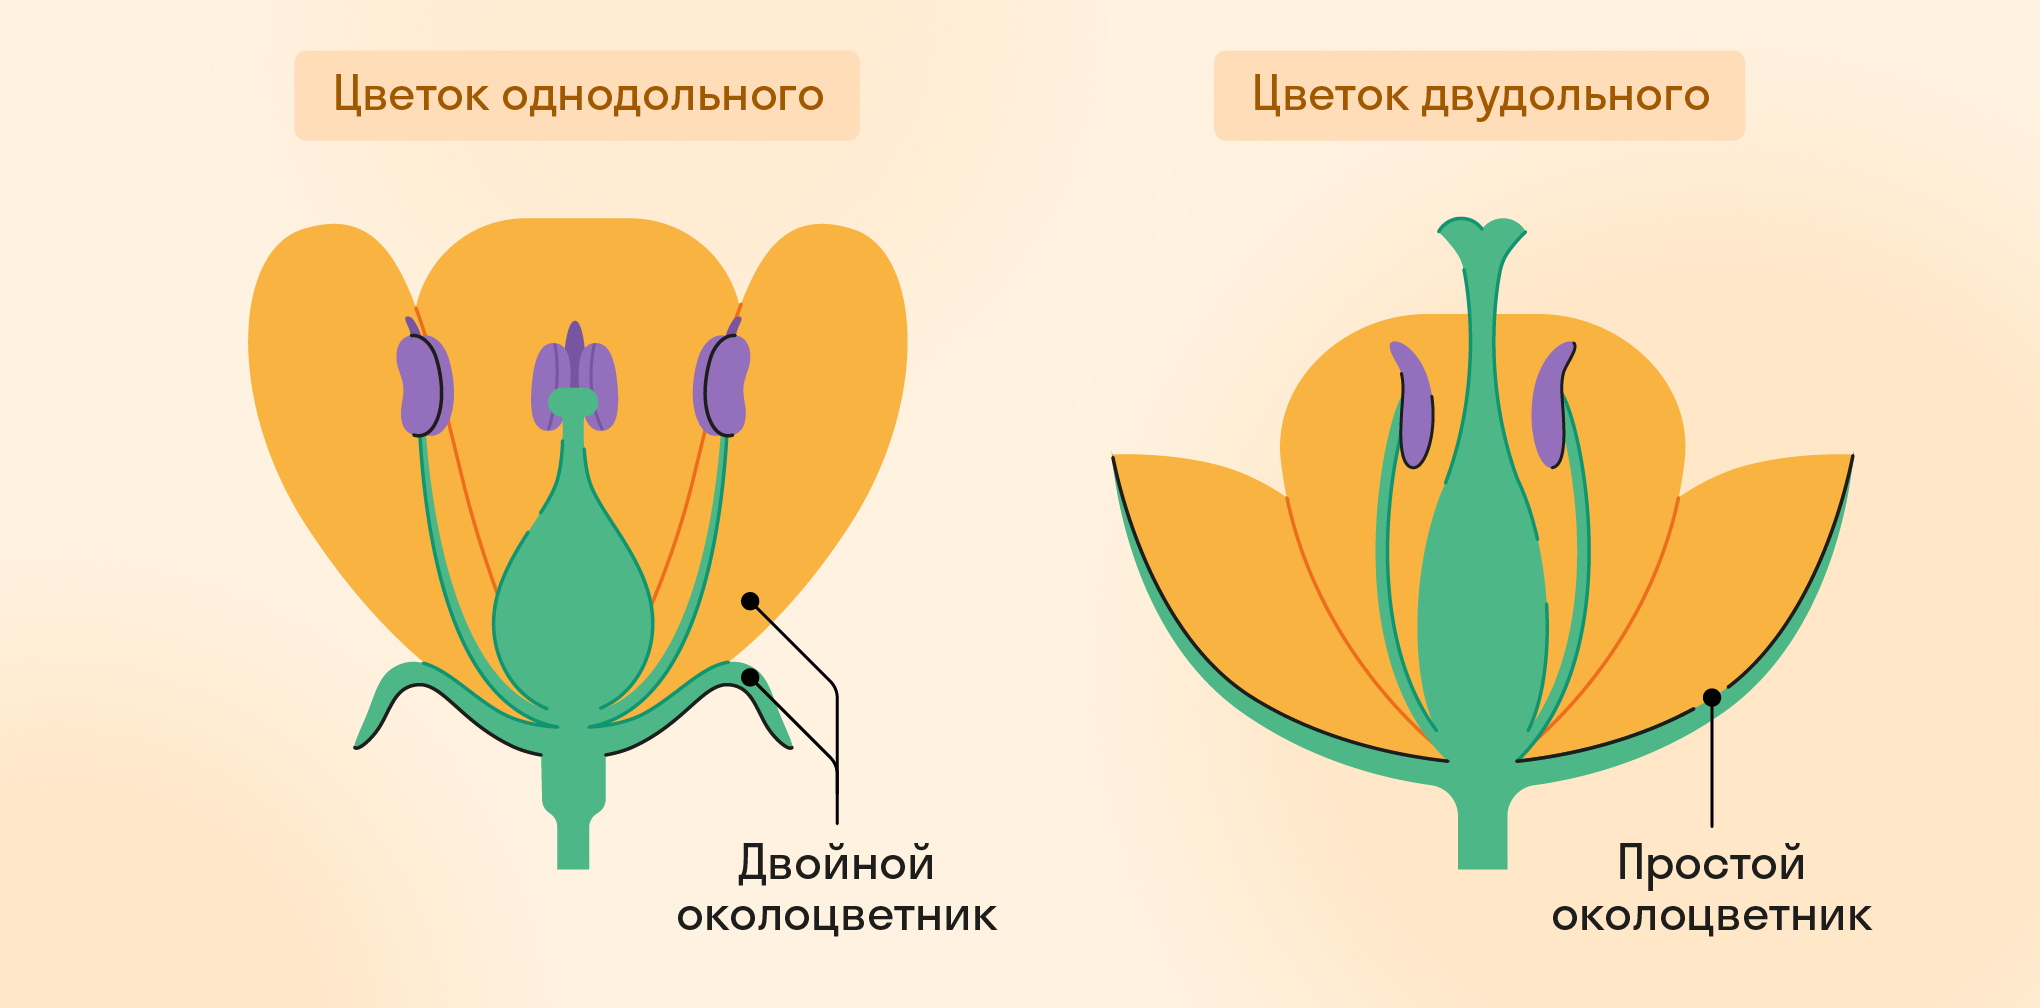 Околоцветник однодольного и двудольного растений